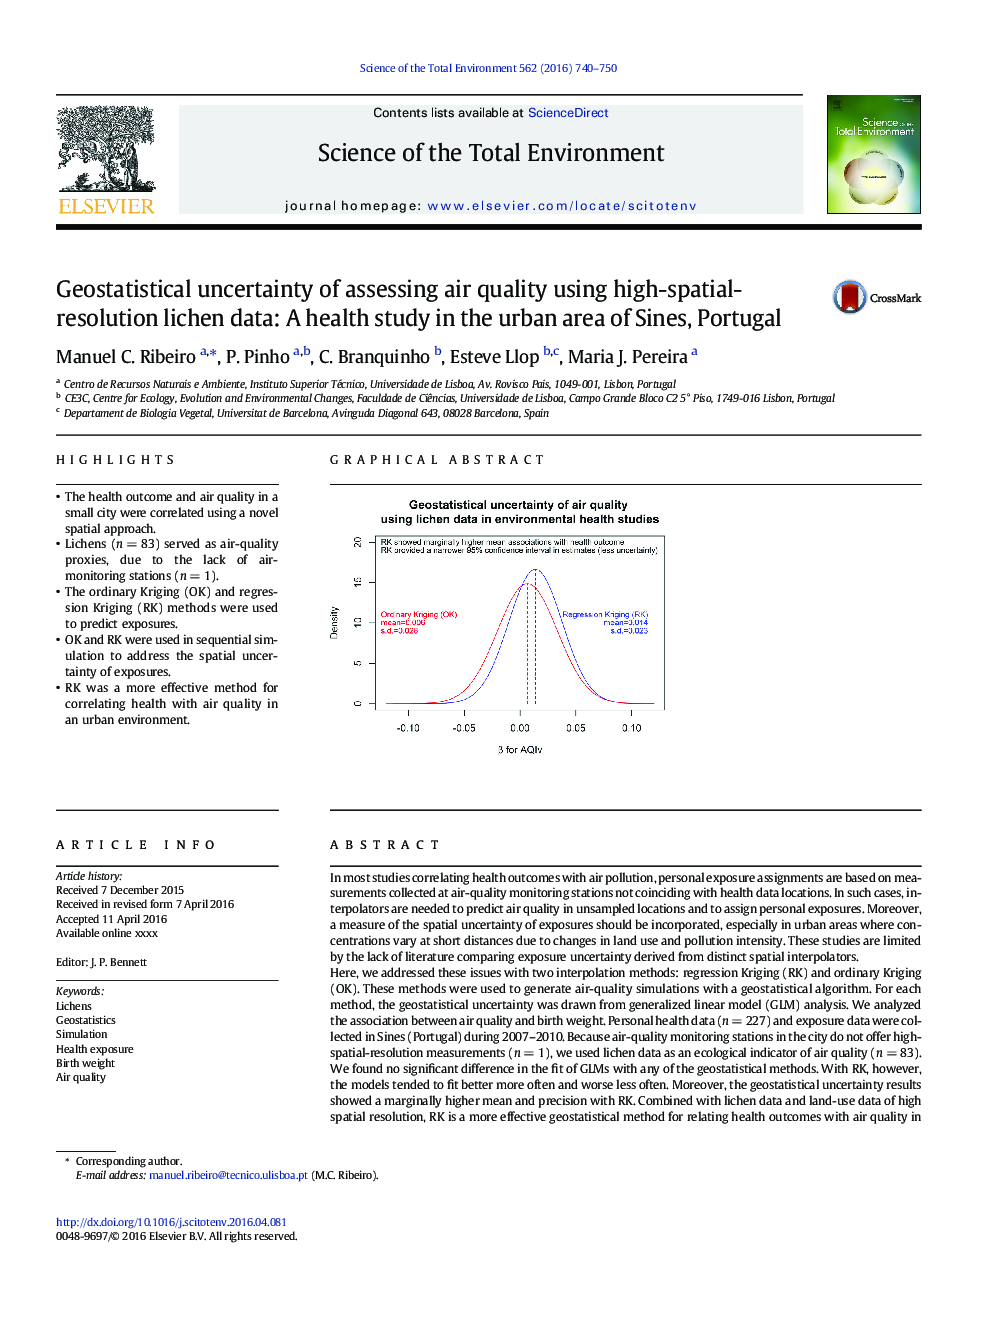 عدم اطمینان زمینشناسی ارزیابی کیفیت هوا با استفاده از داده های لیسن با تفکیک پذیری فضایی: یک مطالعه سلامت در منطقه شهری سینس، پرتغال 